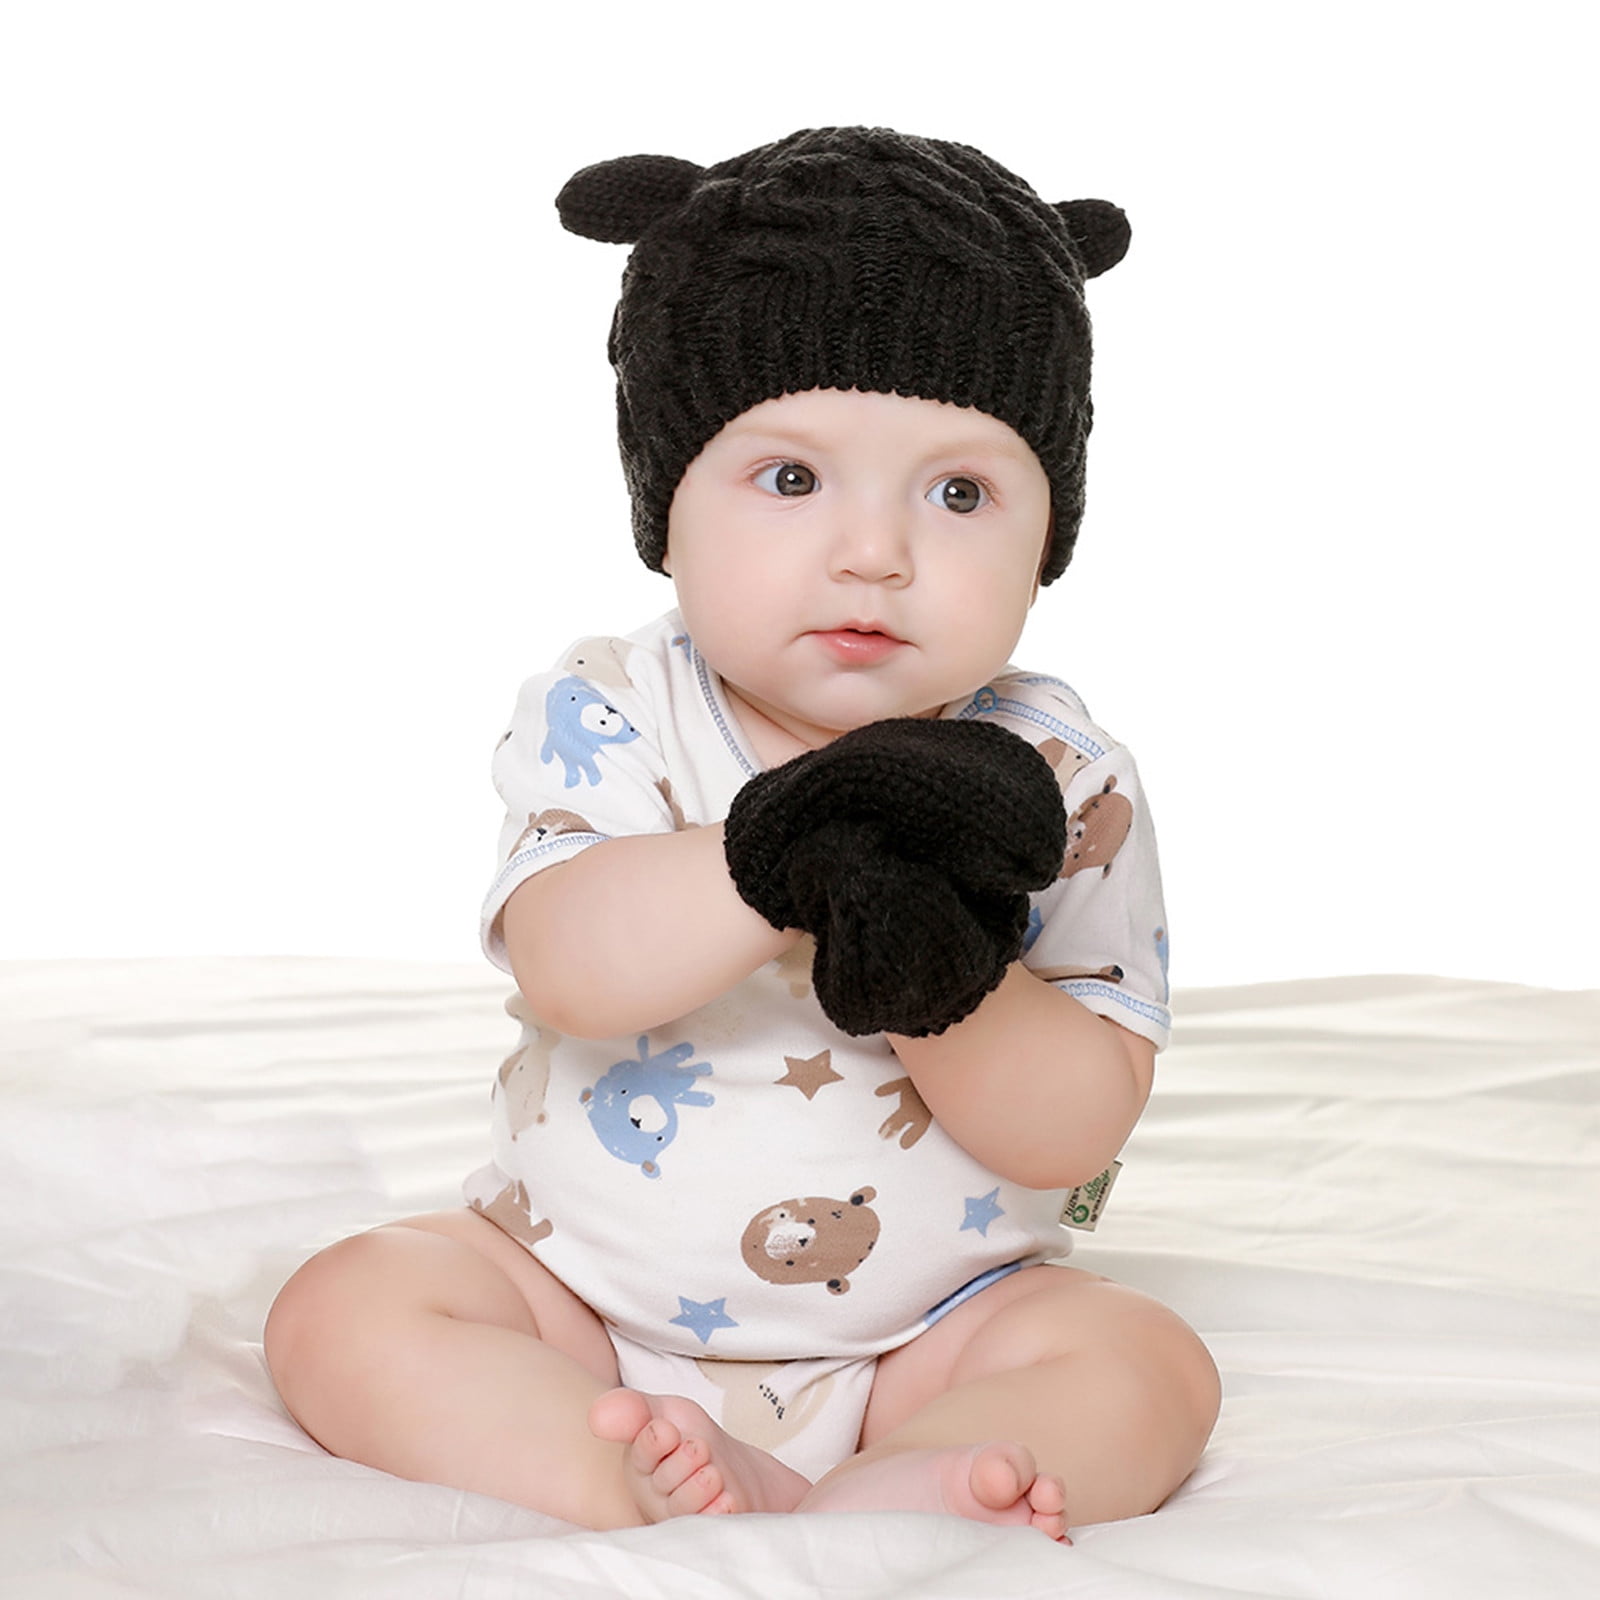 Baby Newborn Toddler Infant Cotton Knot Warm Hat Cap Beanie Boys Girls 